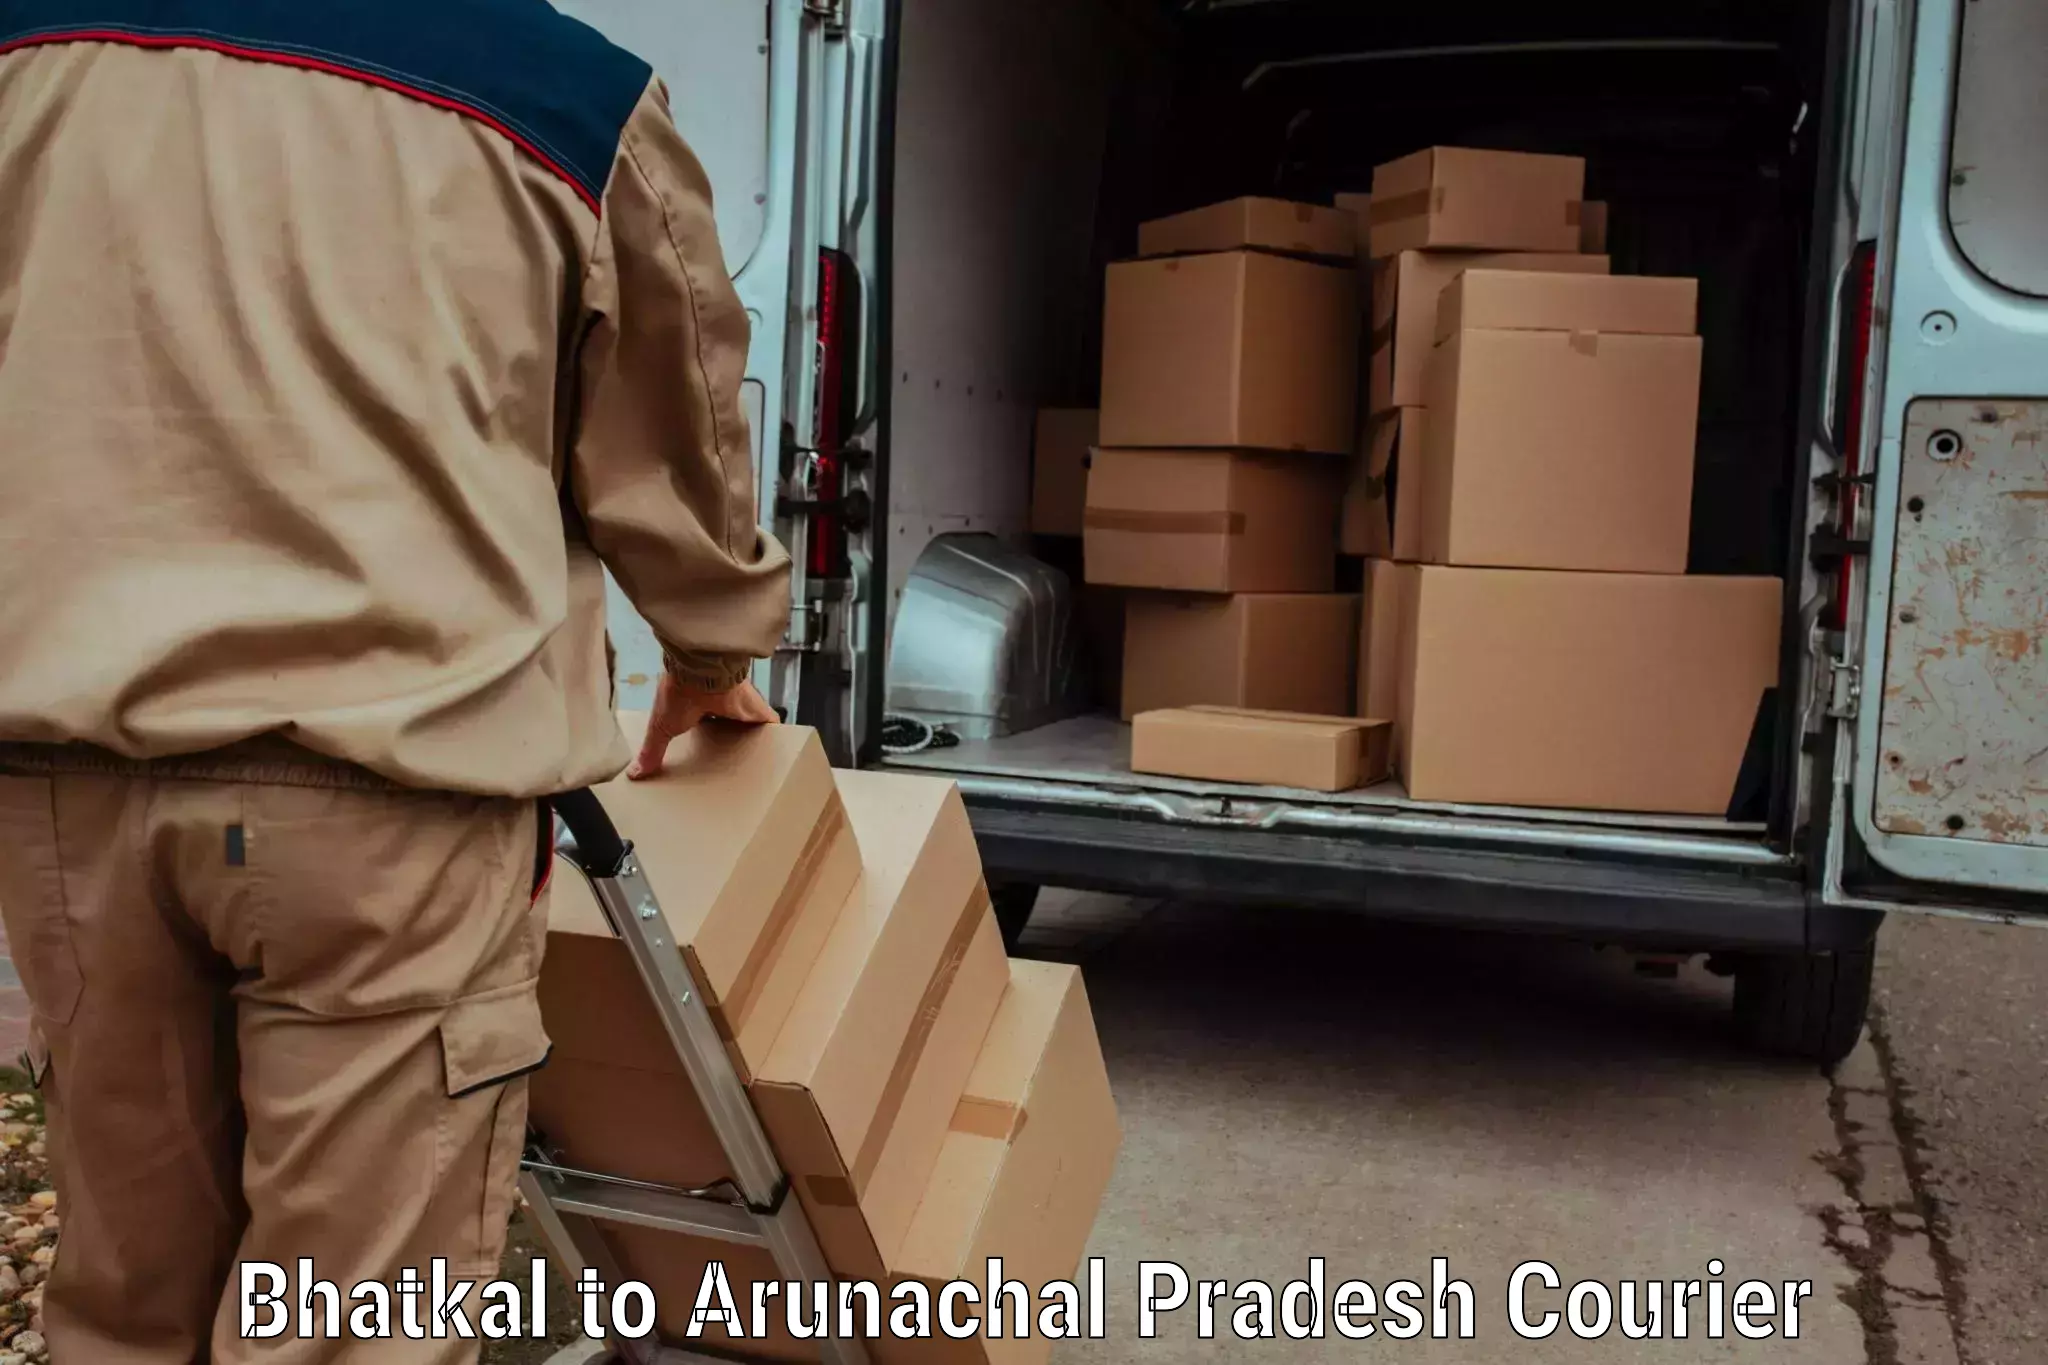 Flexible delivery schedules Bhatkal to Arunachal Pradesh